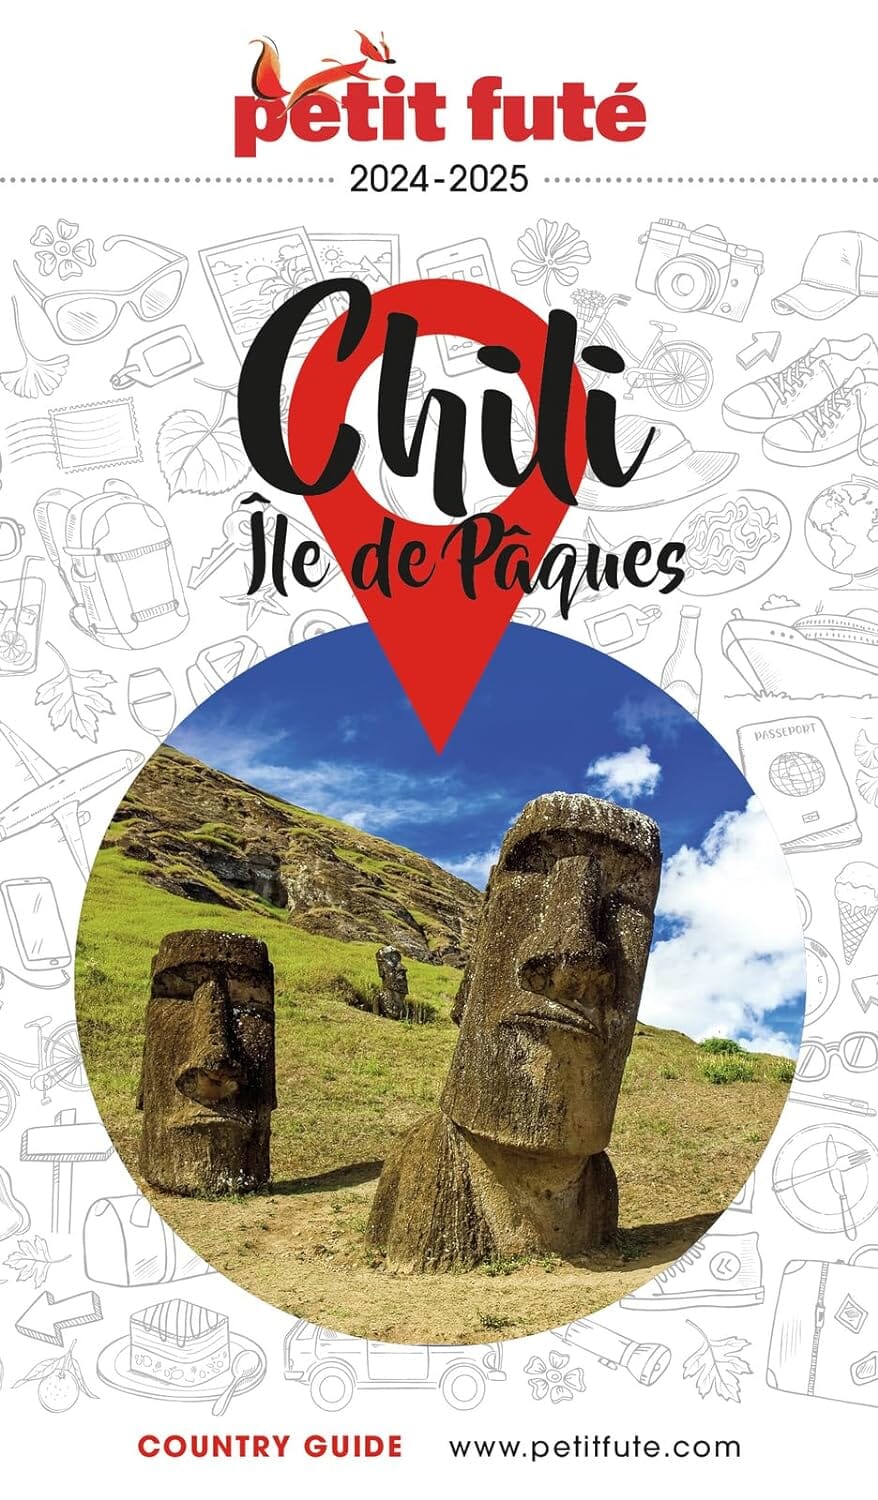 Guide de voyage - Chili & île de Pâques 2024/25 | Petit Futé guide de voyage Petit Futé 